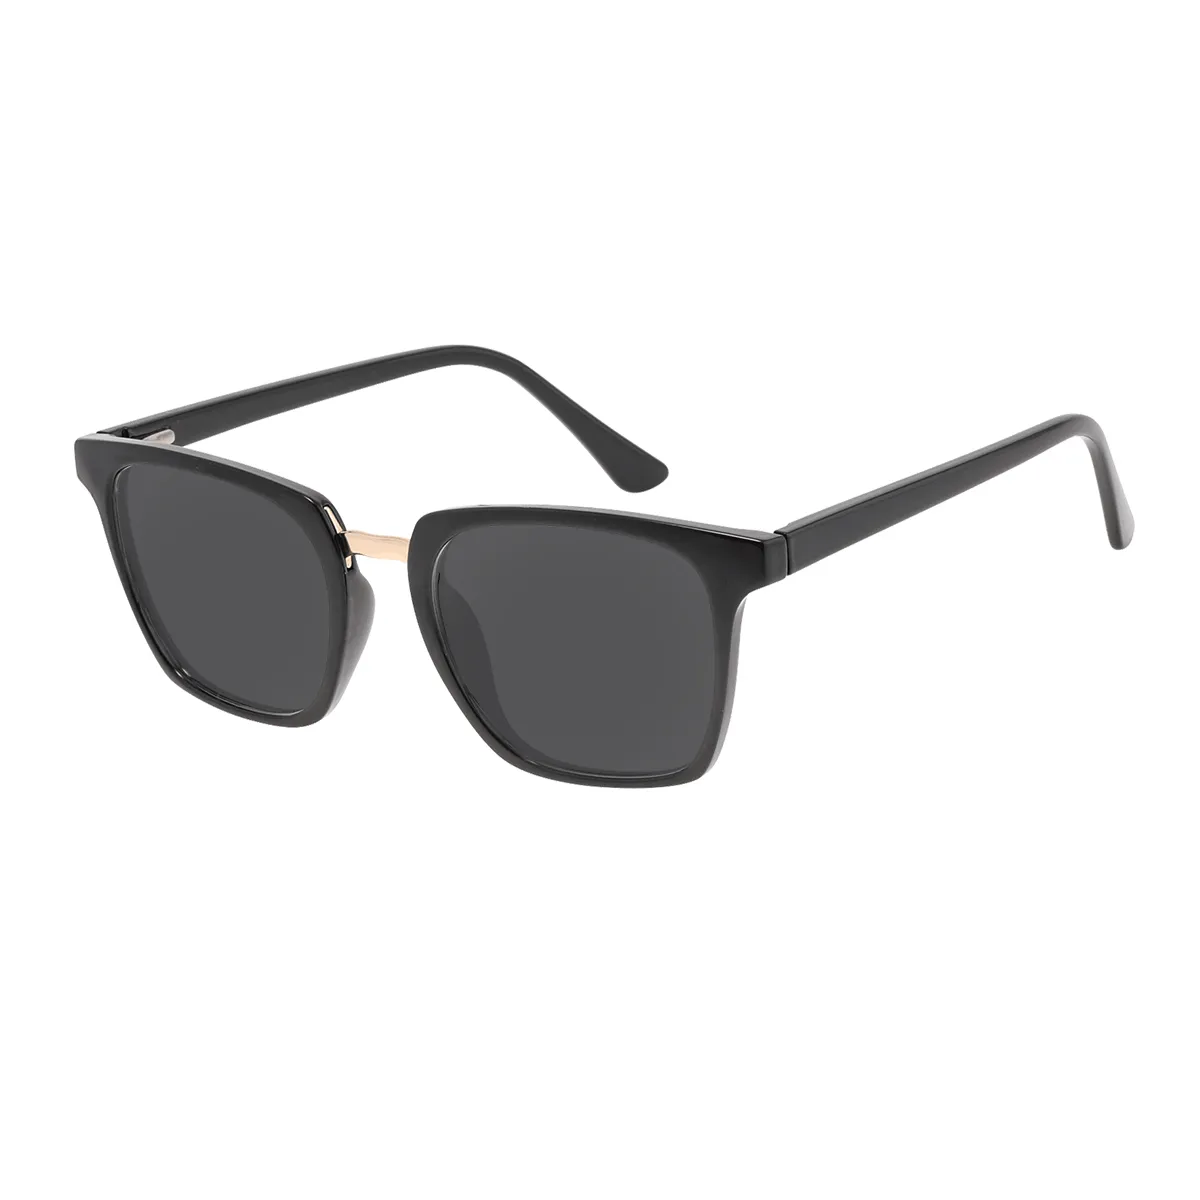 Bonner - Square Black Sunglasses for Men & Women